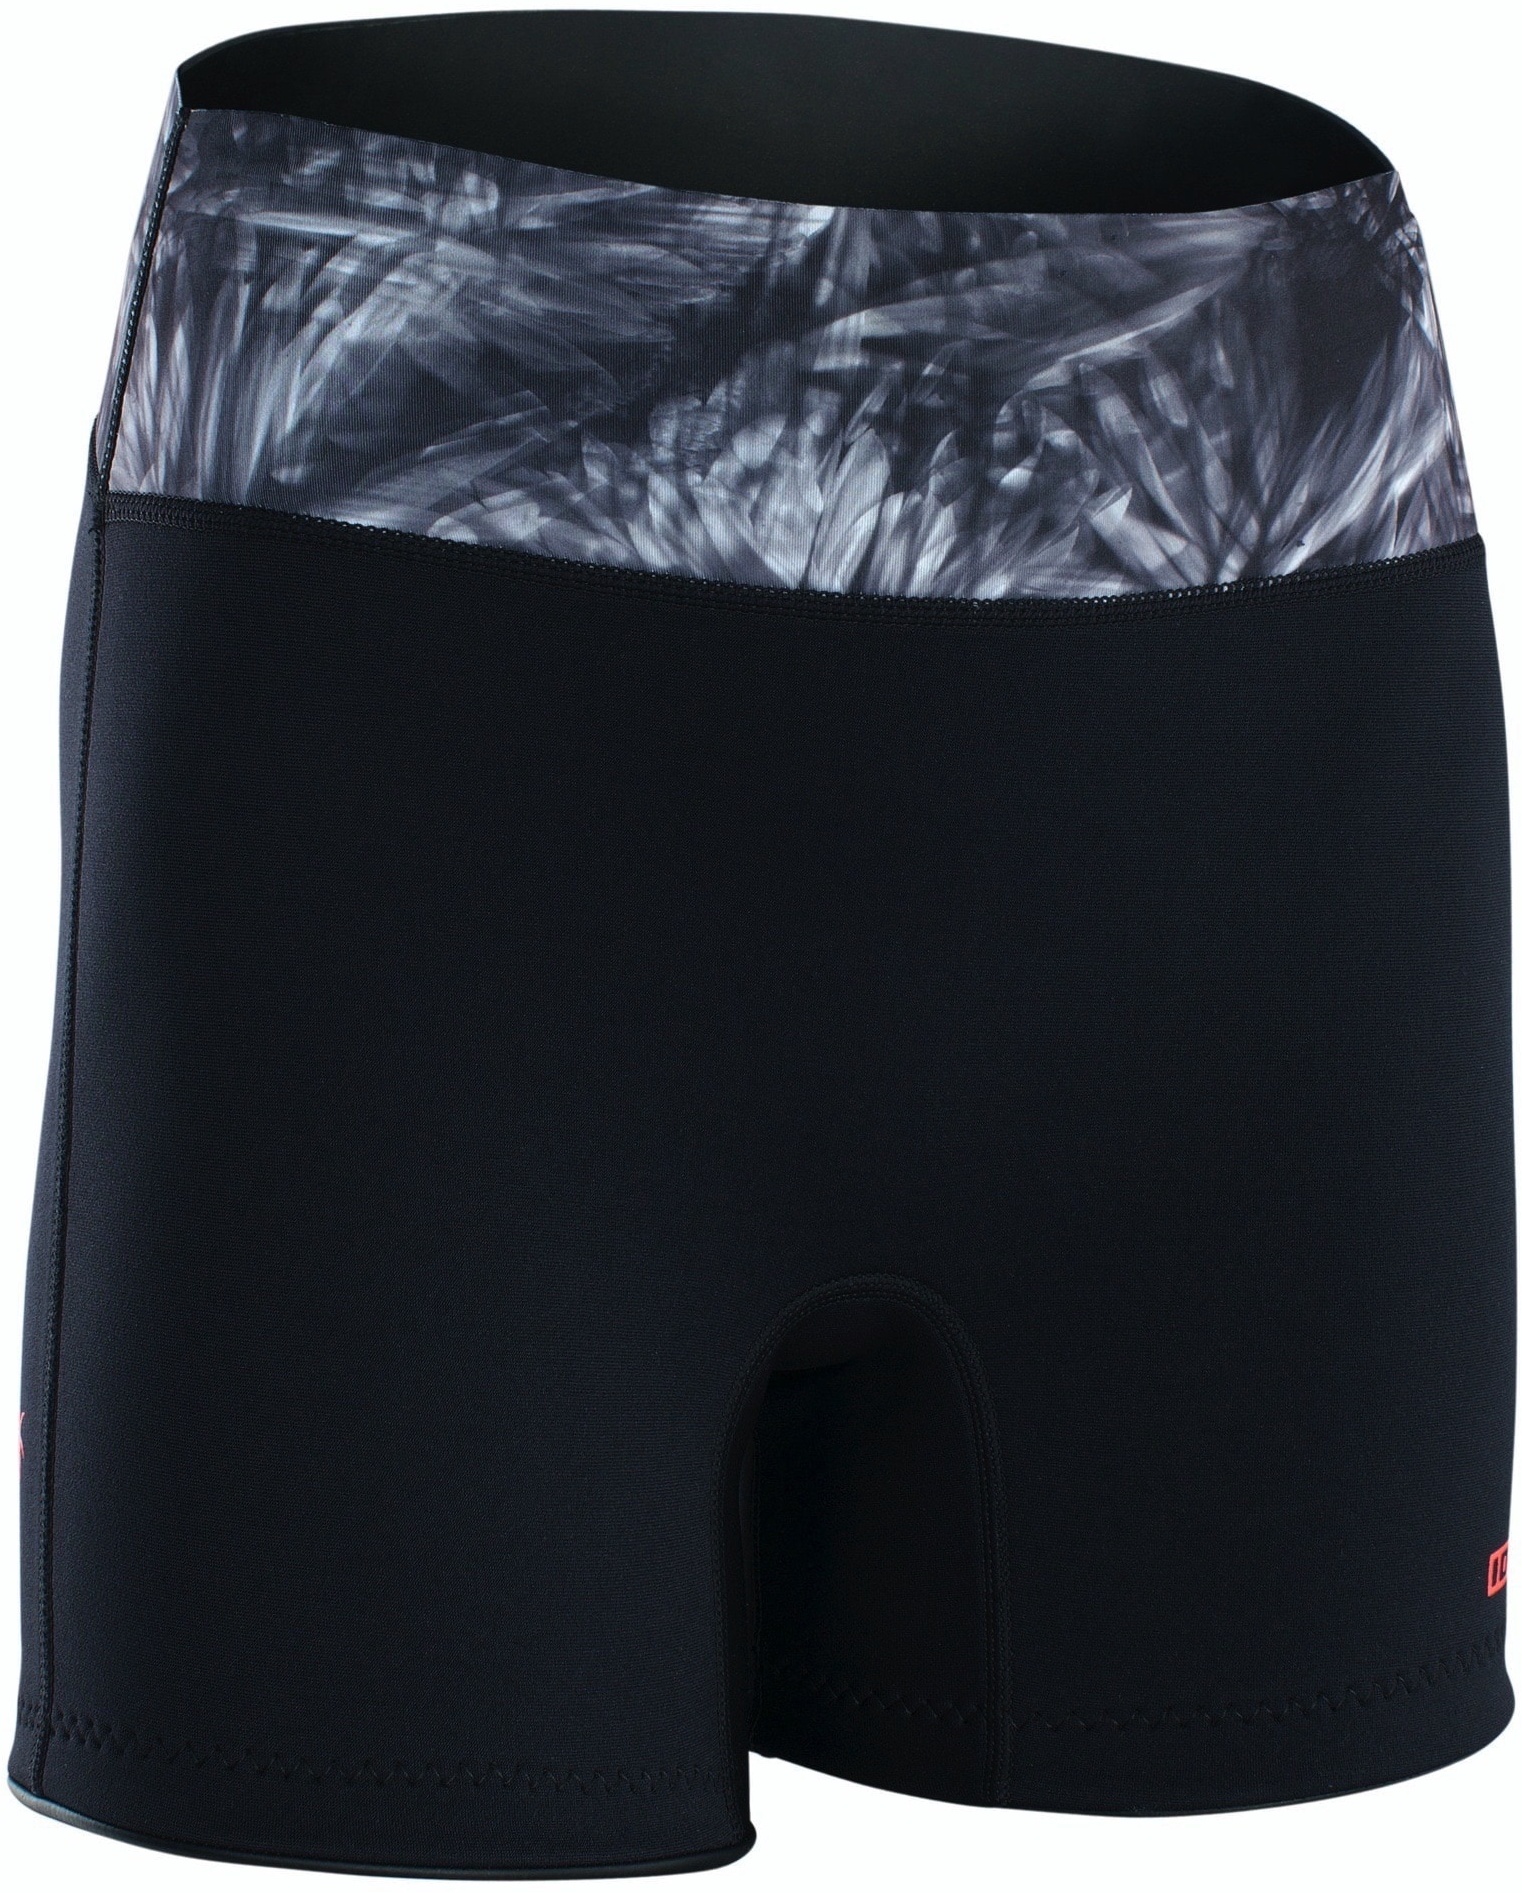 ION Neo Shorts Damen 23 Hose Warm Unterteil Rushguard Leicht, Größe: XS, Farbe: 013 black-flowers